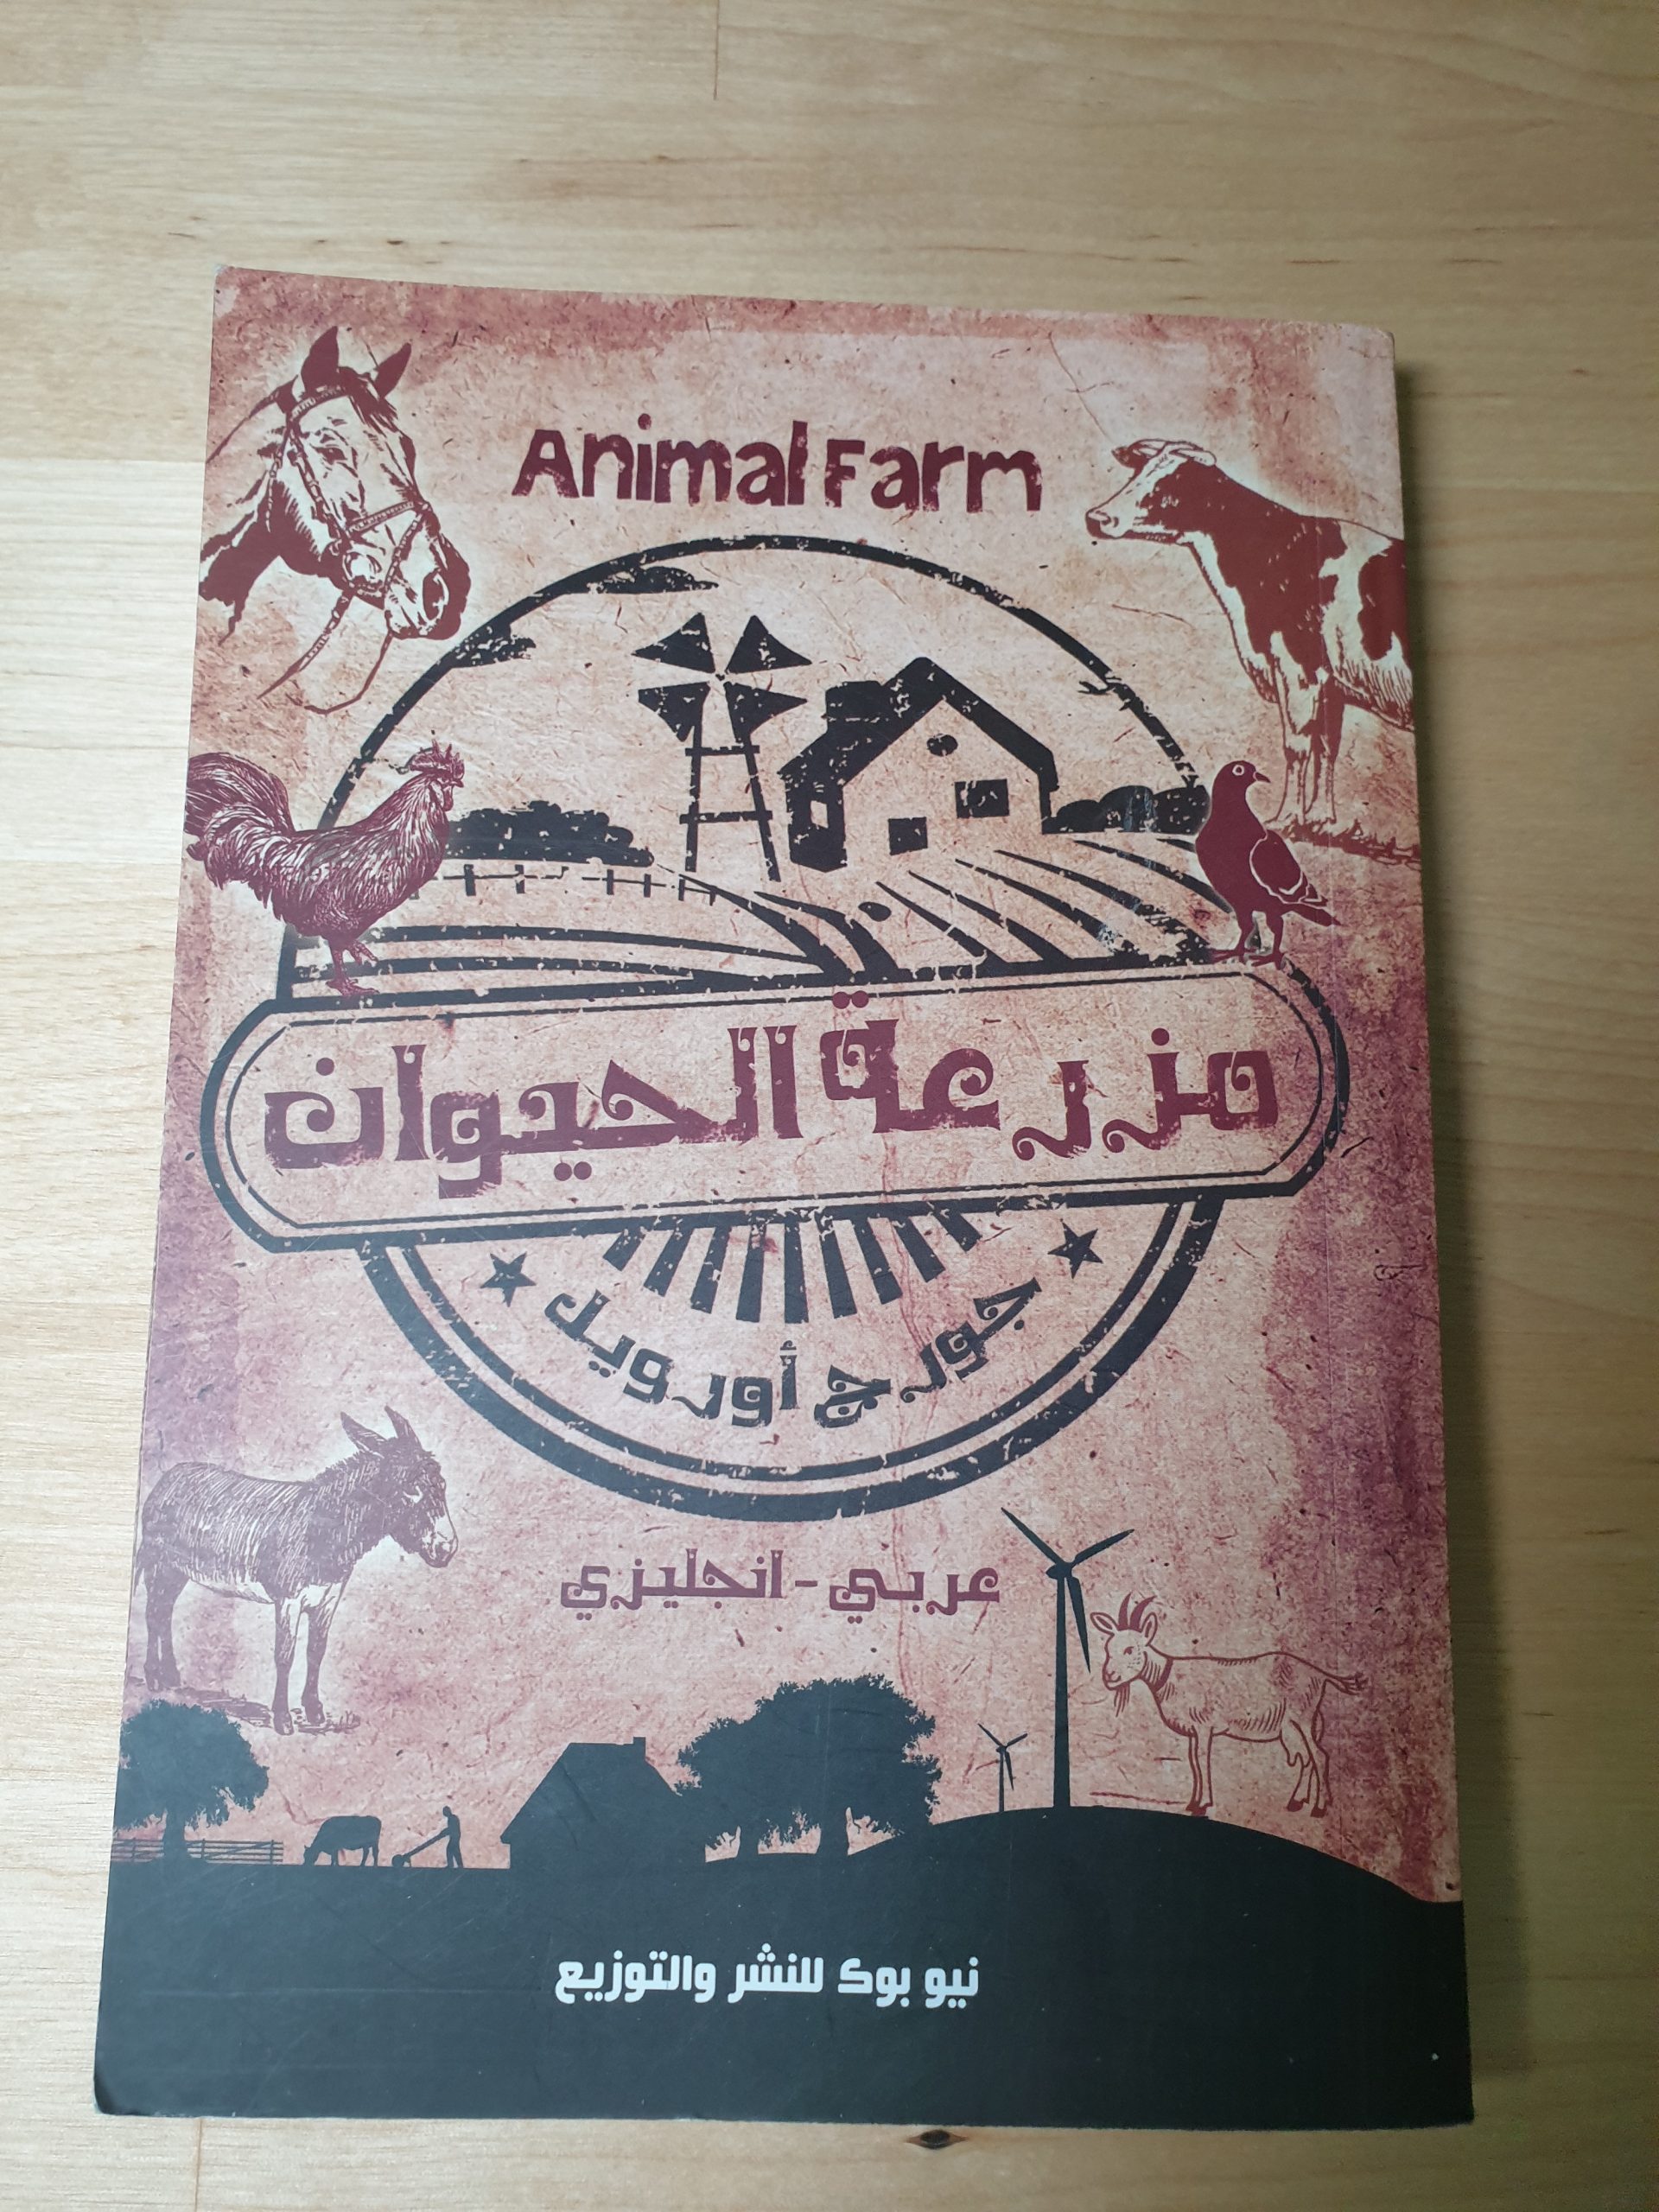 Animal Farm (مزرعة الحيوان) by George Orwell (English-Arabic)